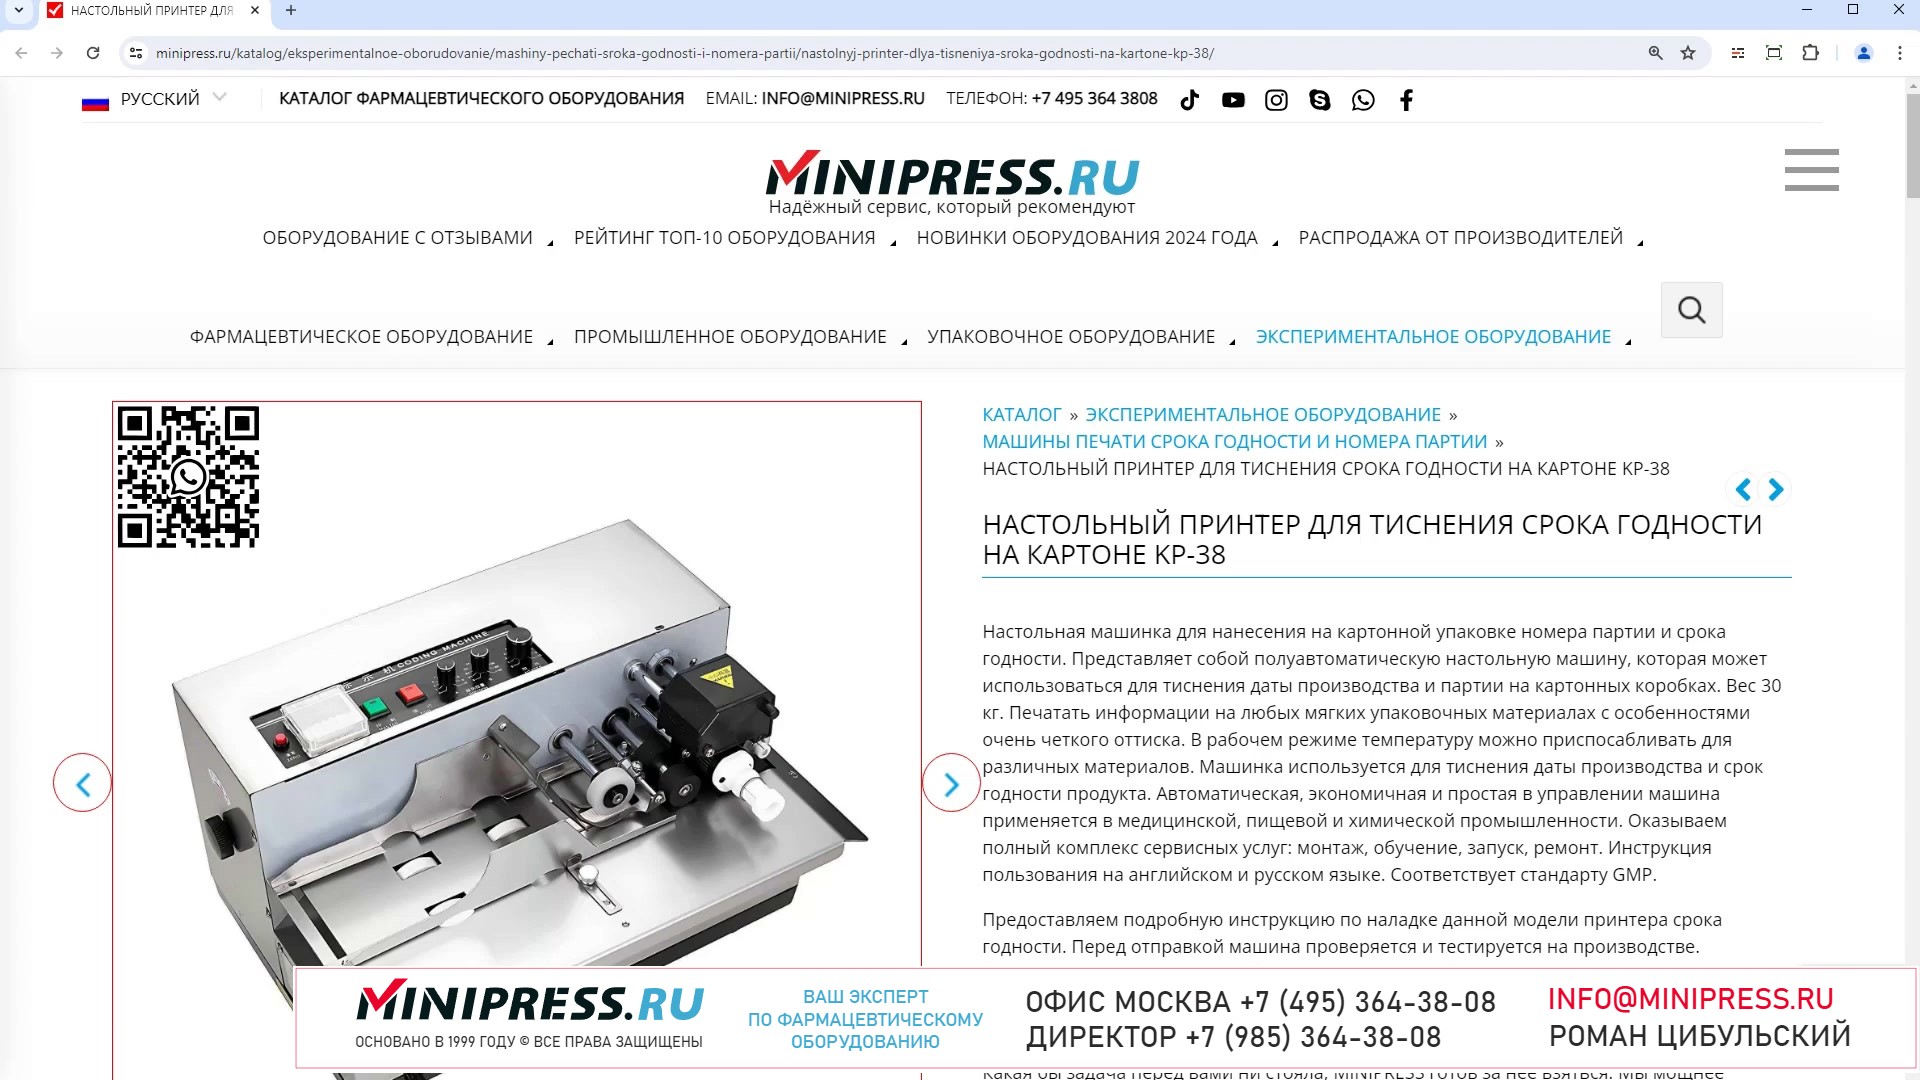 Minipress.ru Настольный принтер для тиснения срока годности на картоне KP-38